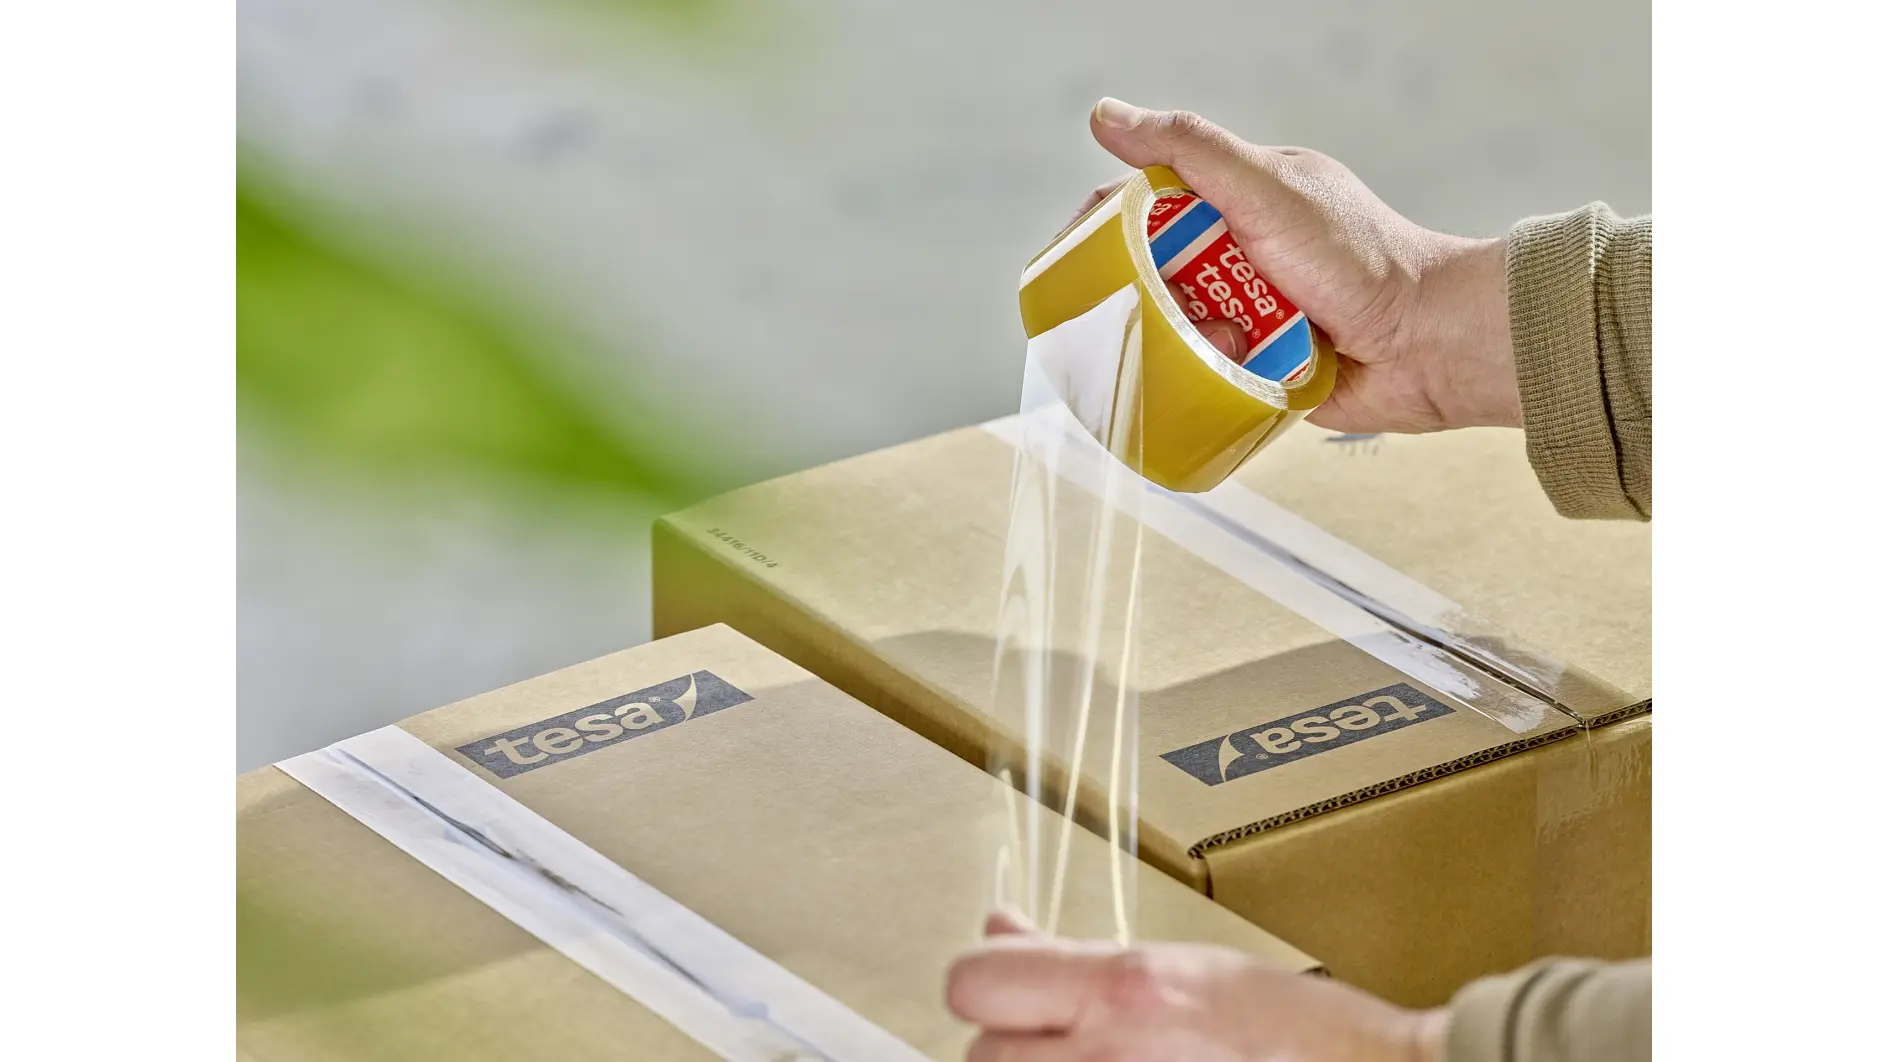 Toepassing van tesa® 60400 biobased verpakkingstape